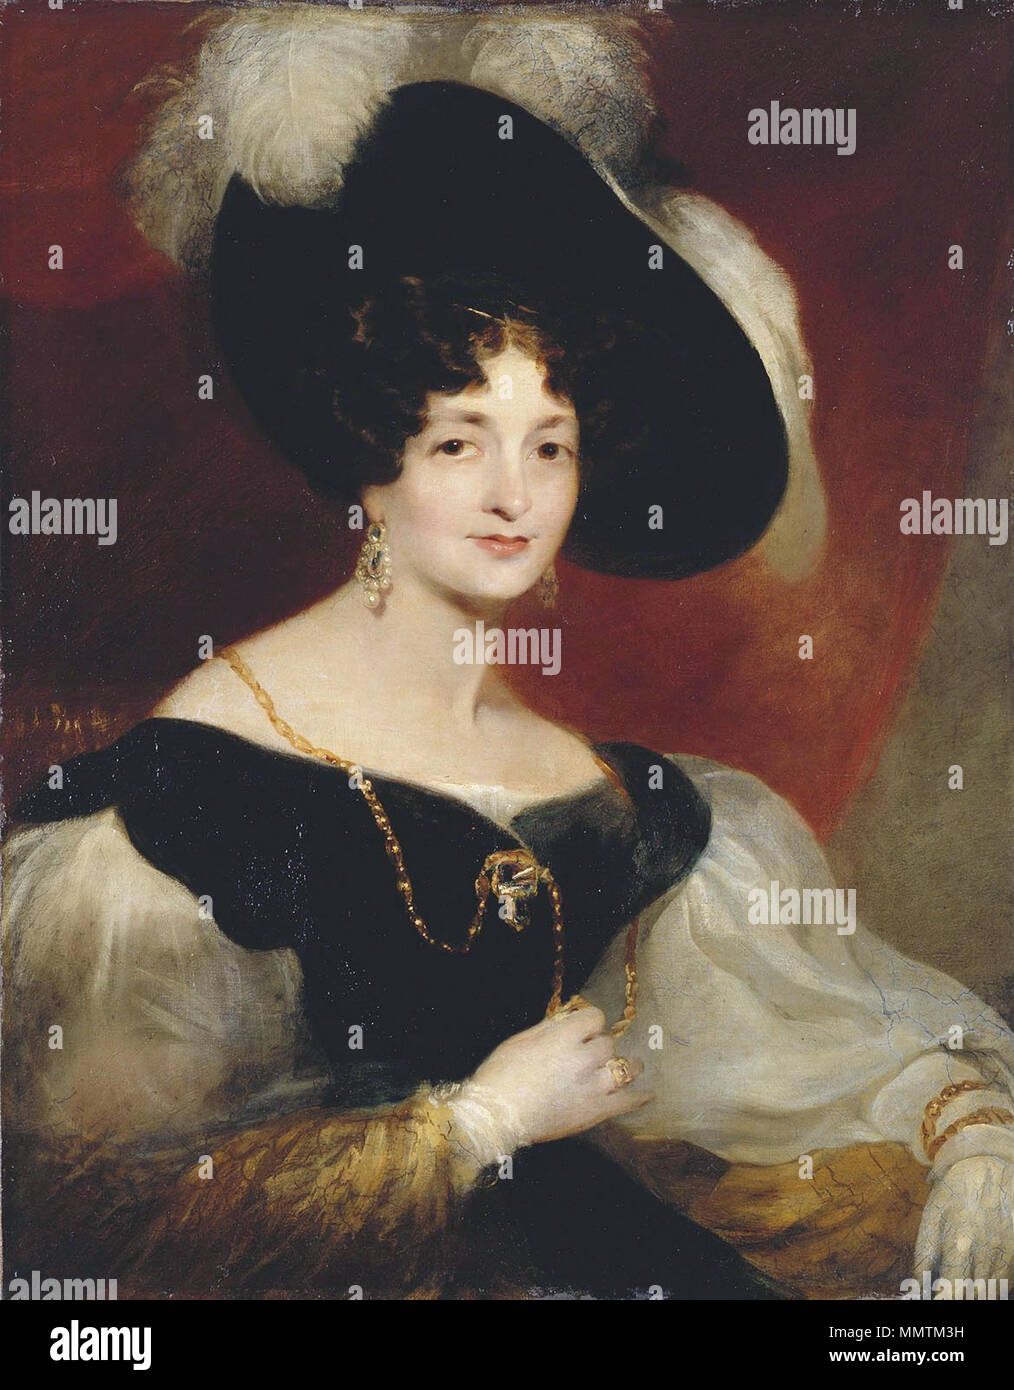 . Ritratto di Victoria, duchessa di Kent Victoria, duchessa di Kent (1788-1861). 1832. Victoria di Sassonia Coburgo - Gotha-Saalfeld - Rothwell 1832 Foto Stock